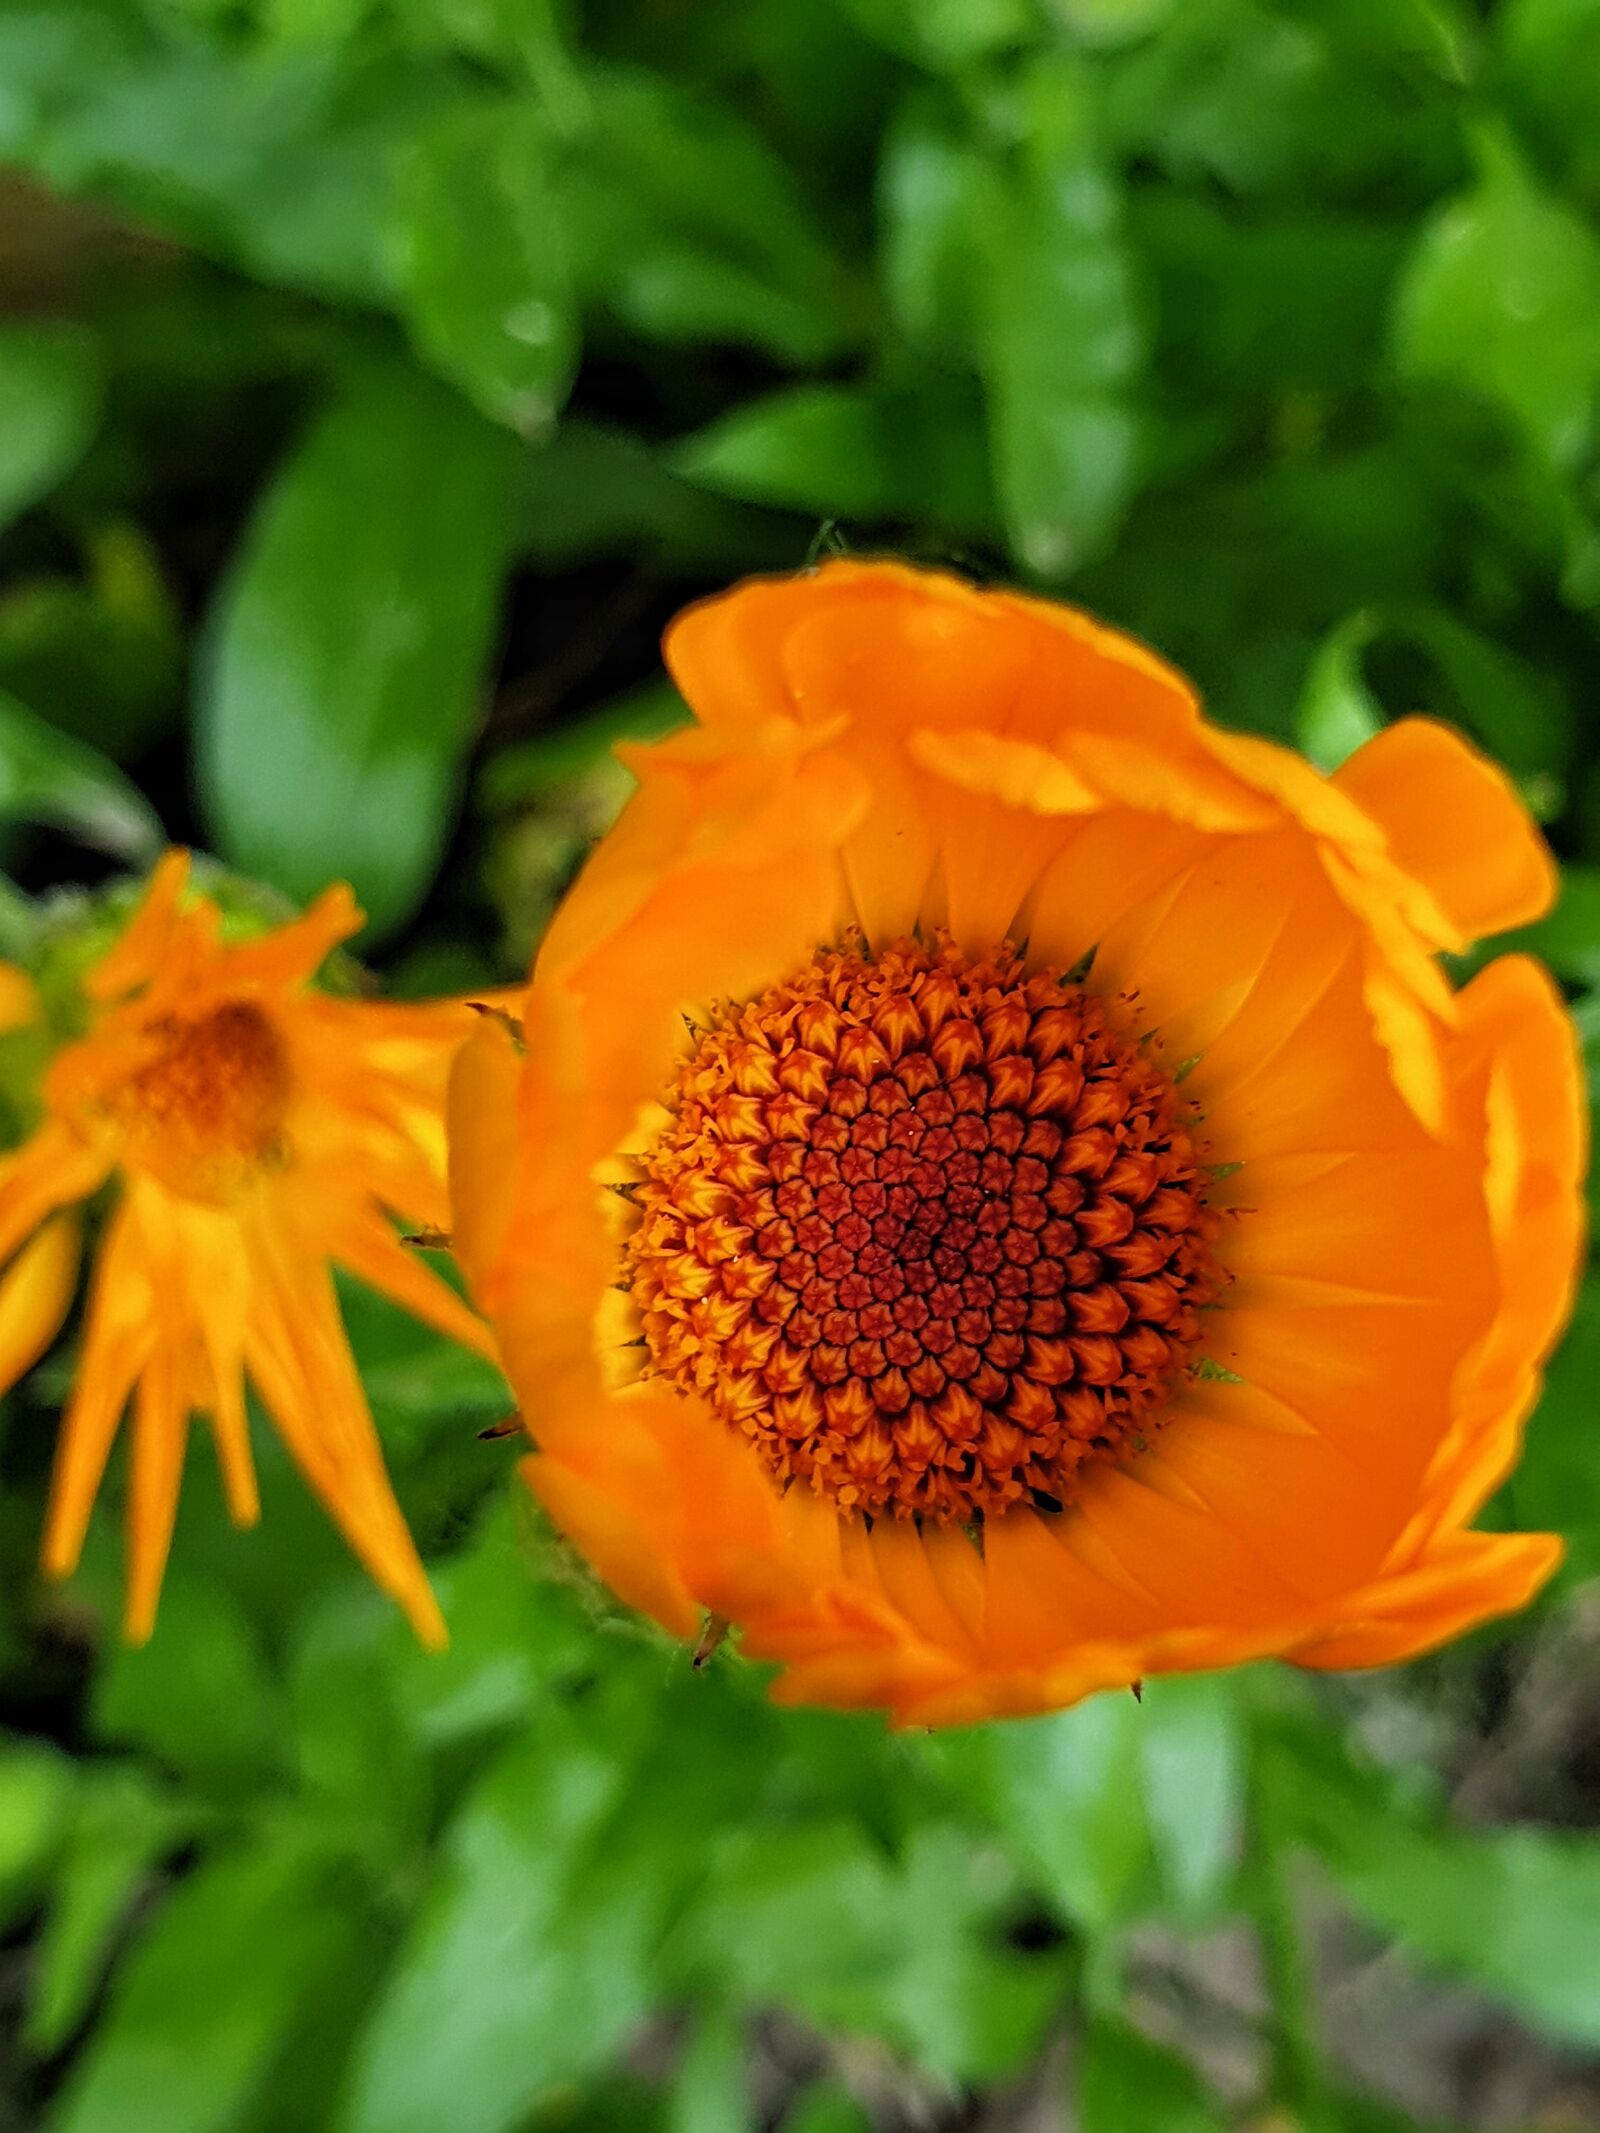 Samsung Galaxy Note9 sample photo. Flower, orange, garden photography